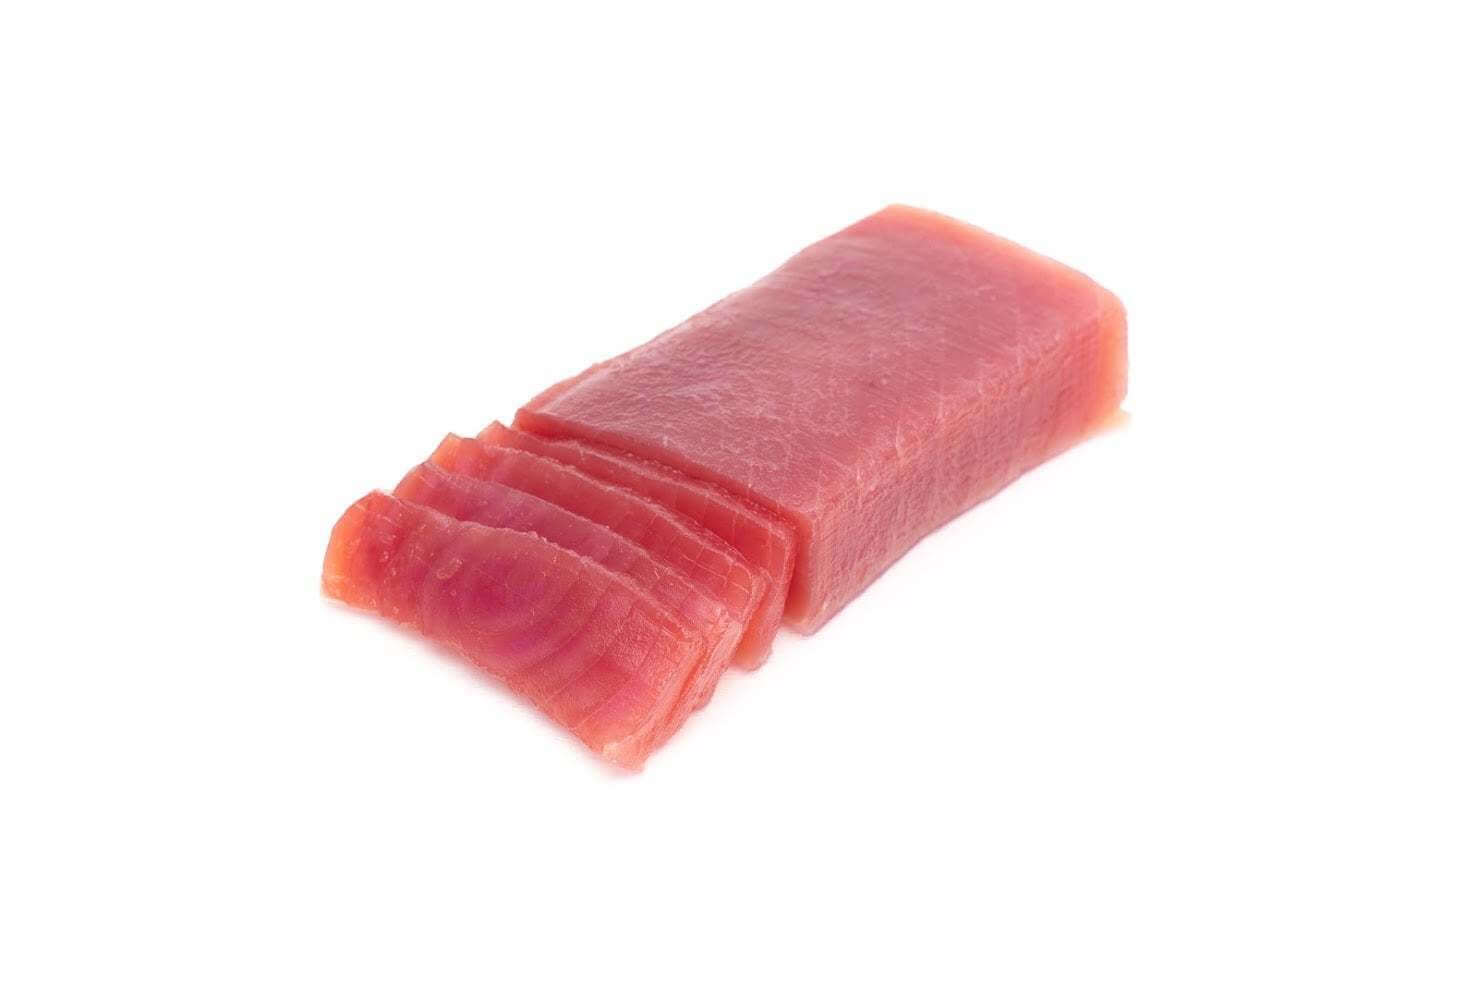 Tuna for sushi